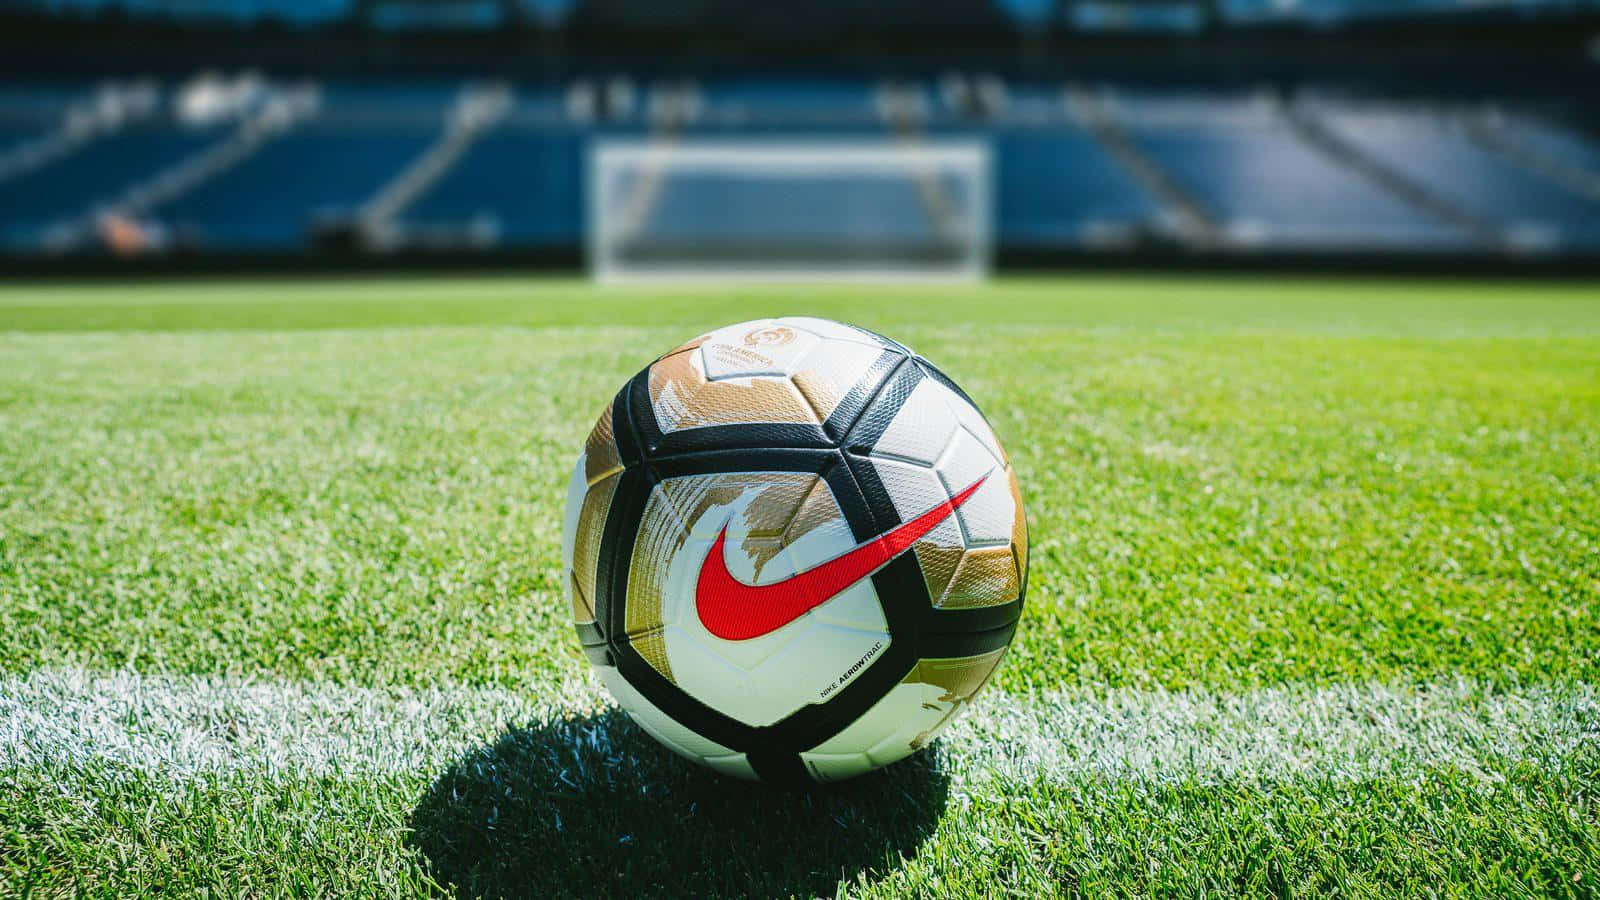 Fondode Pantalla De Balón De Fútbol Con Logotipo De Nike En Rojo.